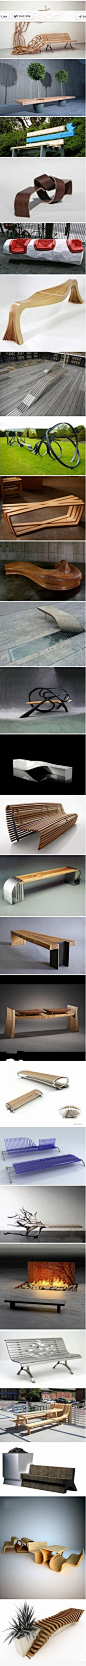 (2) 26 excellent public benches design | Exhibit Idea | Pinterest